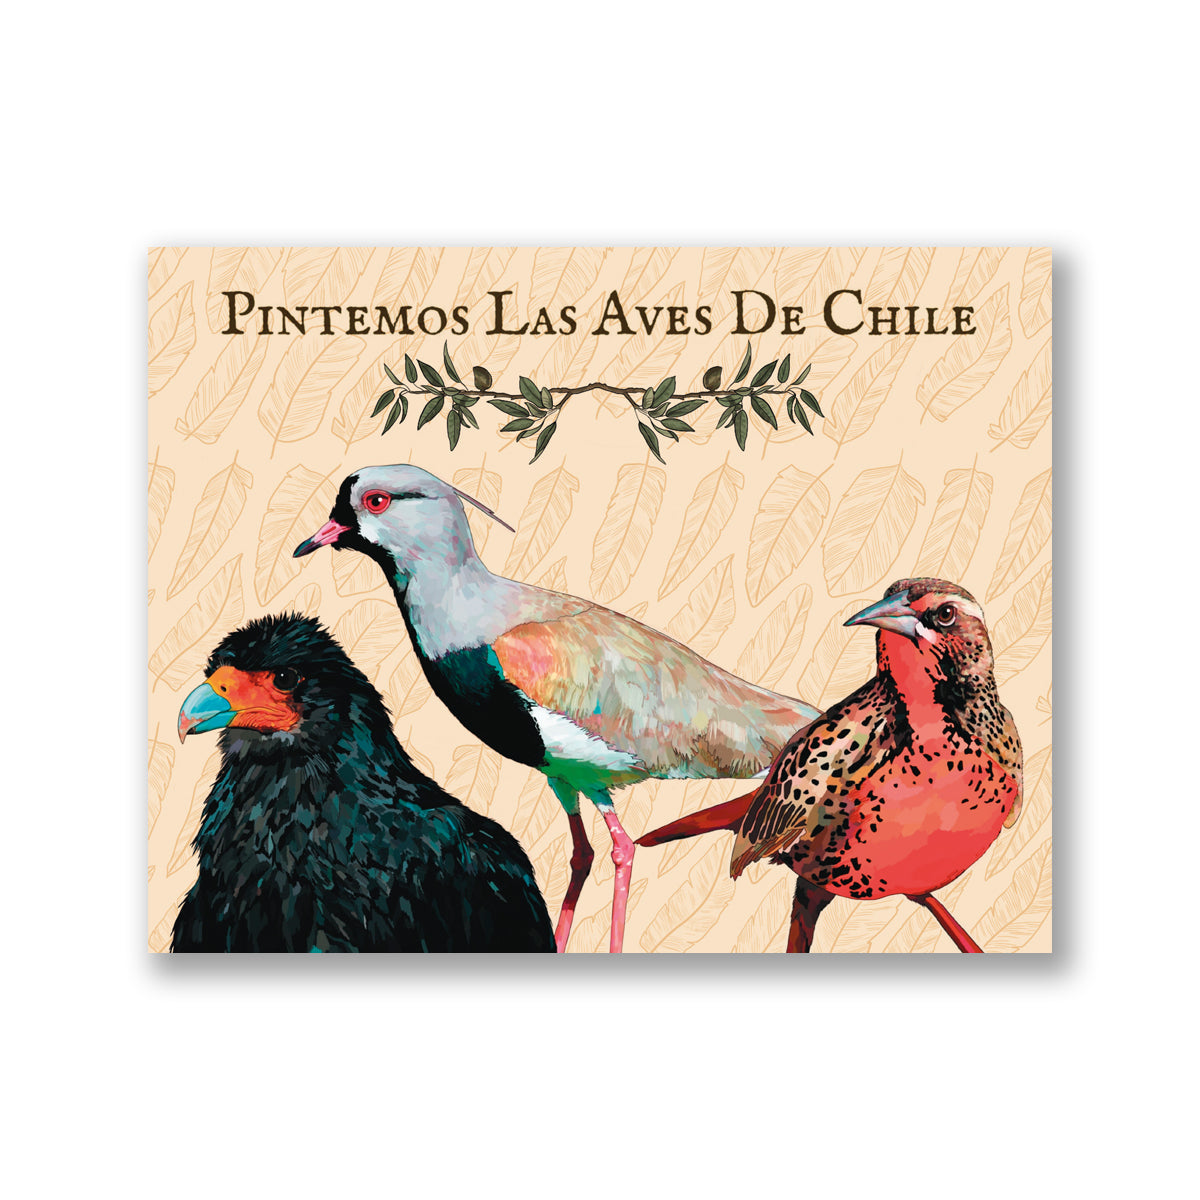 Pintemos las Aves de Chile